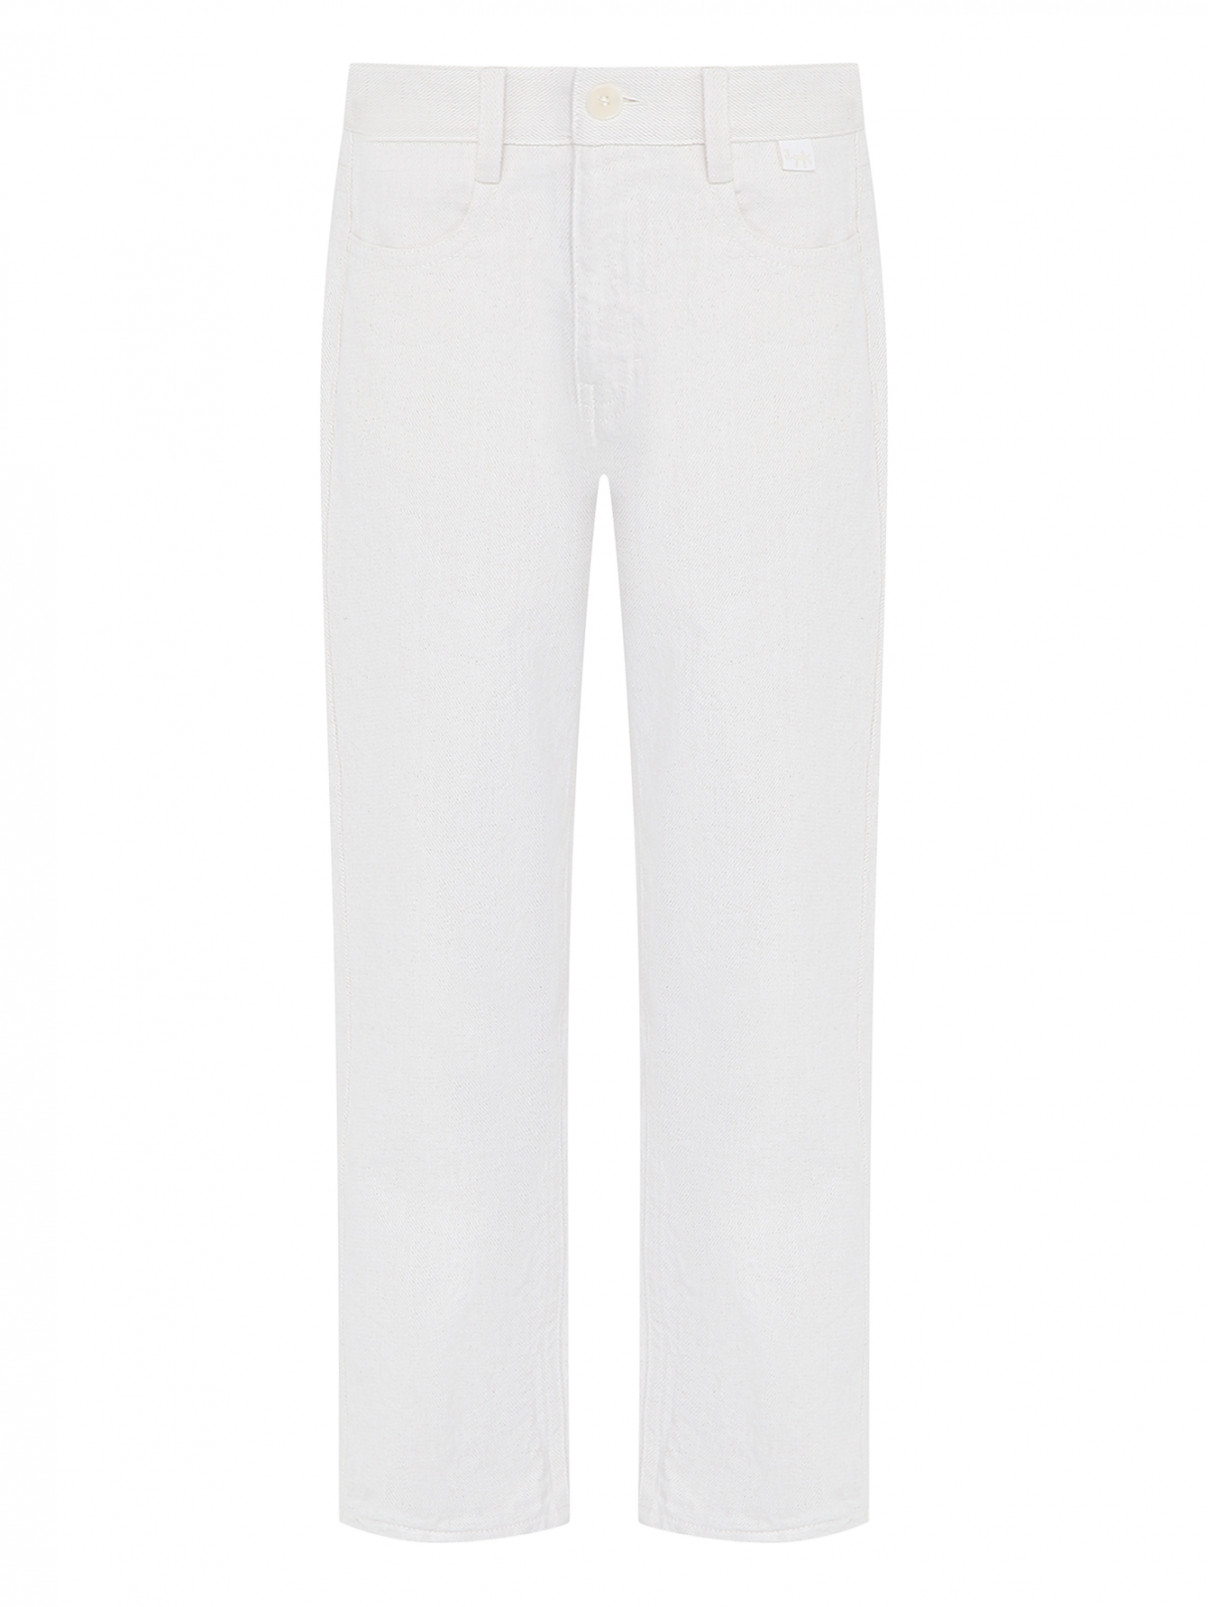 Однотонные брюки из хлопка и льна Il Gufo  –  Общий вид  – Цвет:  Белый